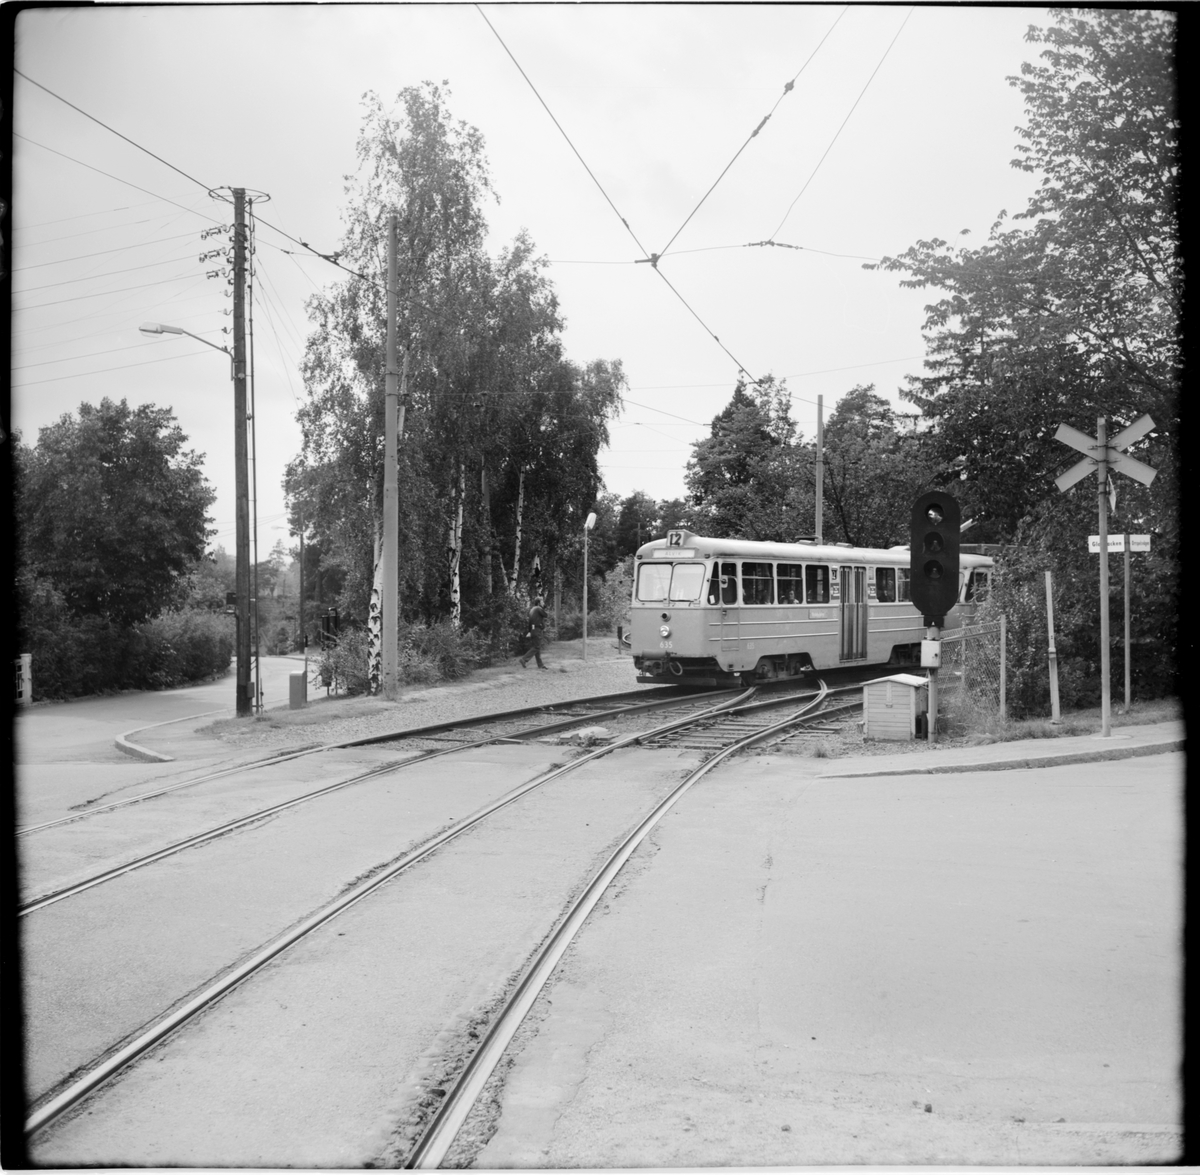 Aktiebolaget Stockholms Spårvägar, SS B24 635 "ängbyvagn" linje 12 Alvik på hållplats vid korsningen Gladbacken / Orrspelsvägen.